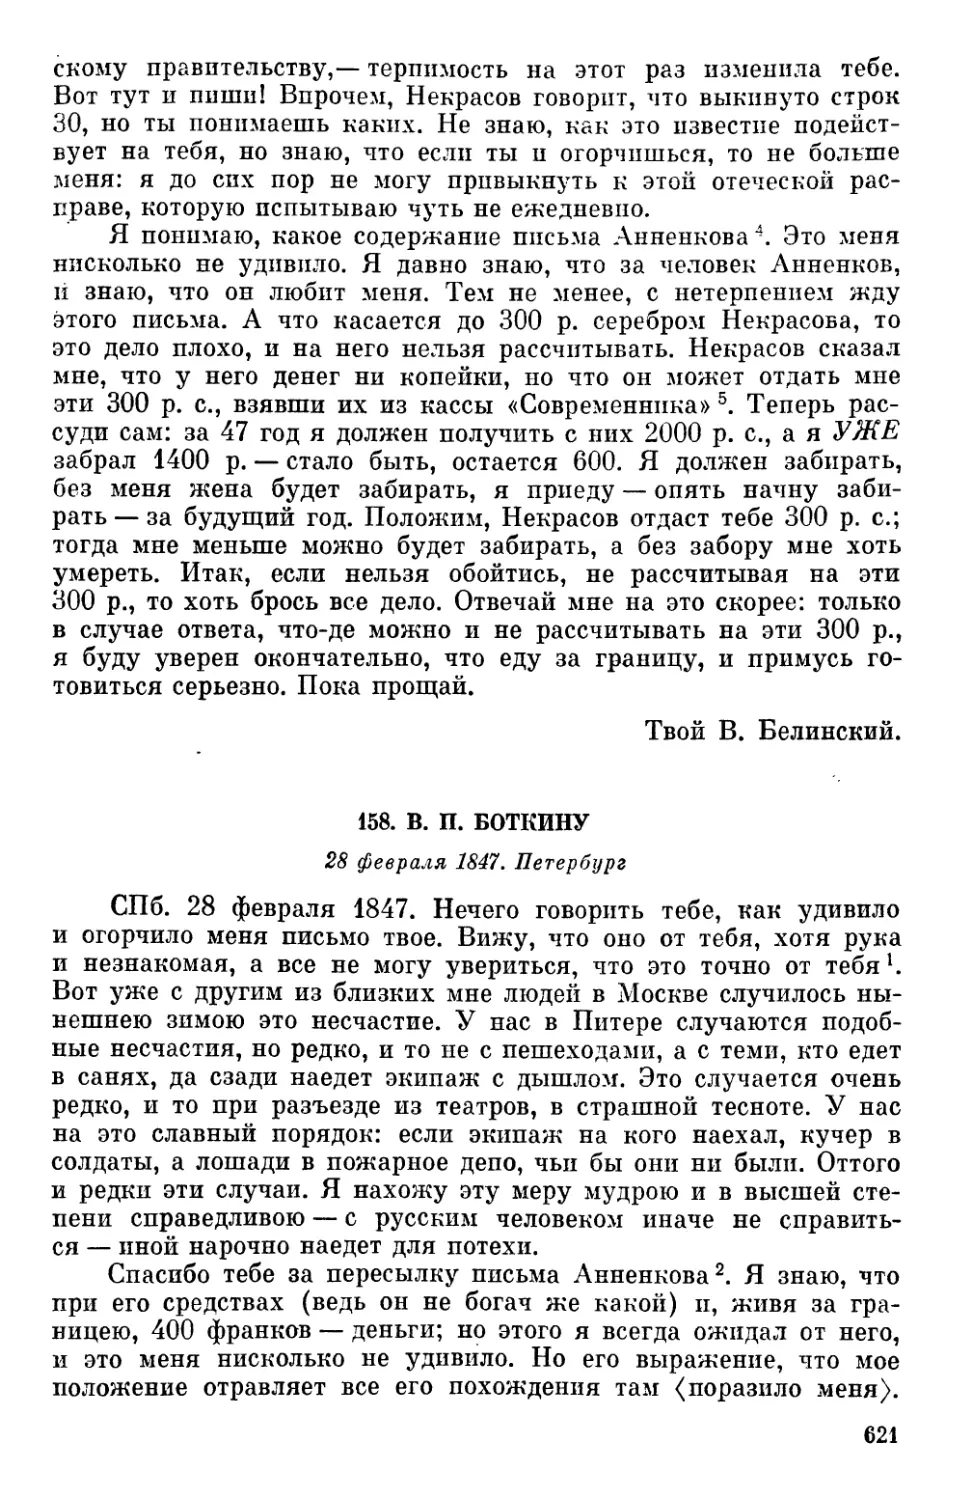 158. В. П. Боткину. 28 февраля 1847